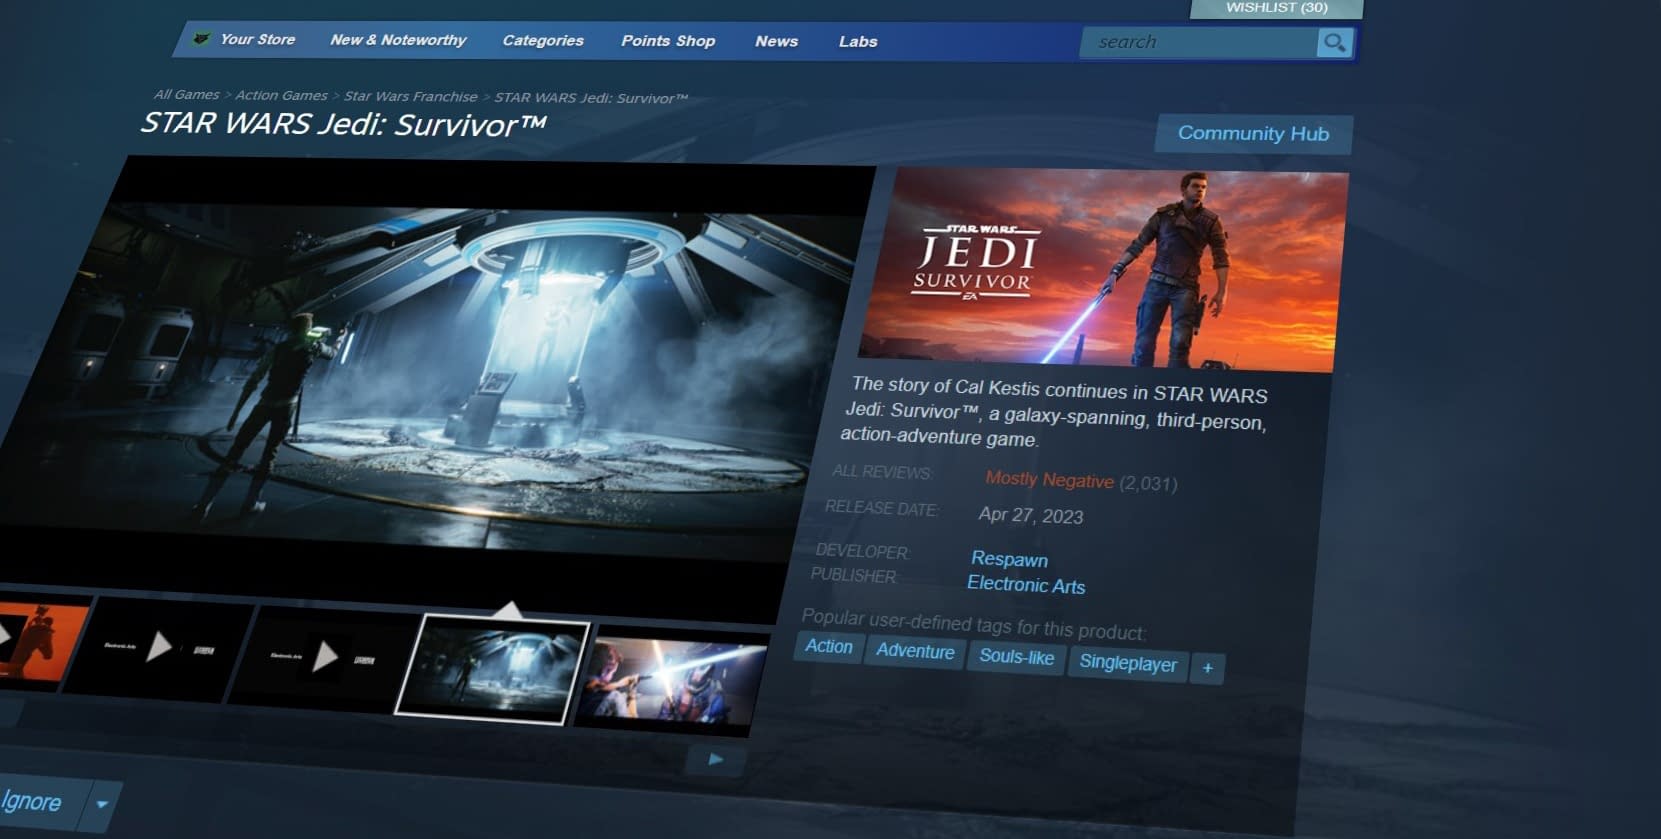 Star Wars Jedi: Survivor Steam has “restricted” reviews